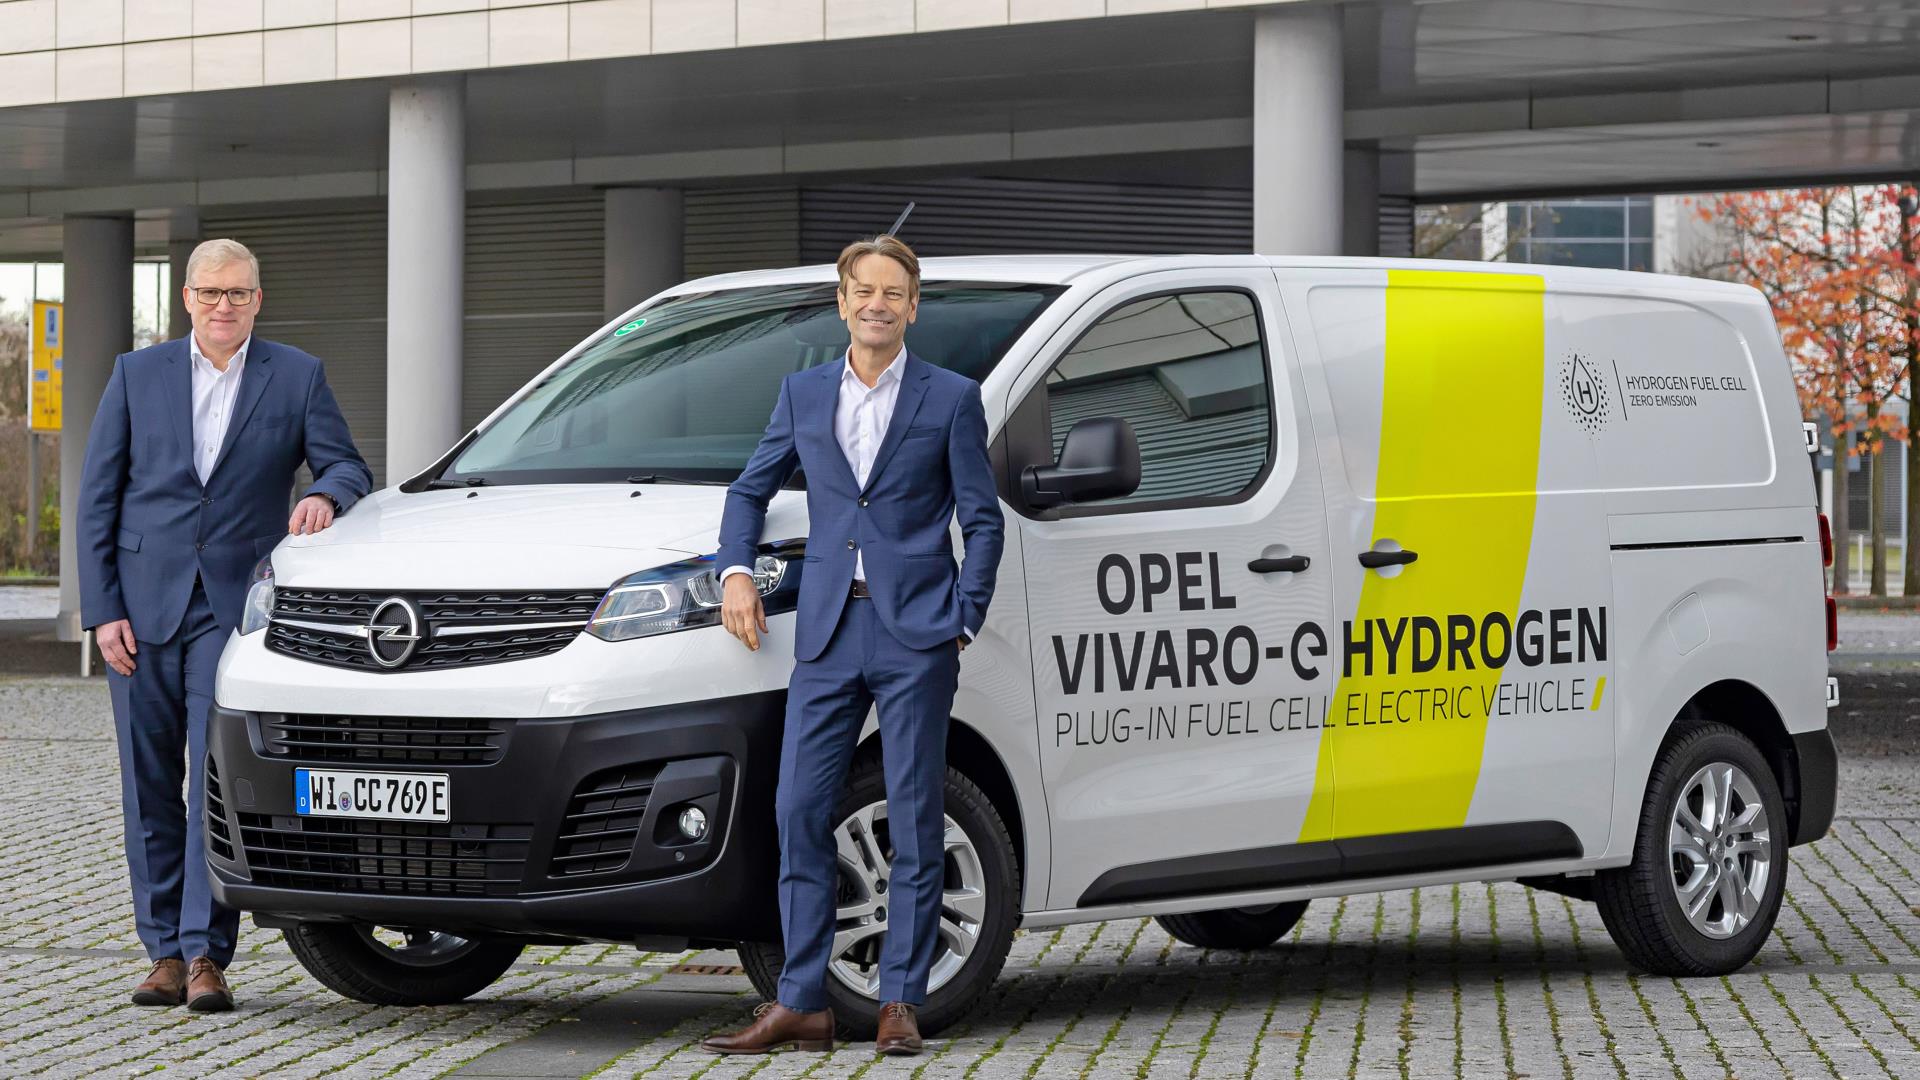 Από αριστερά: Ο Uwe Hochgeschurtz, CEO της Opel και ο Marcus Lott, Επικεφαλής Εξέλιξης